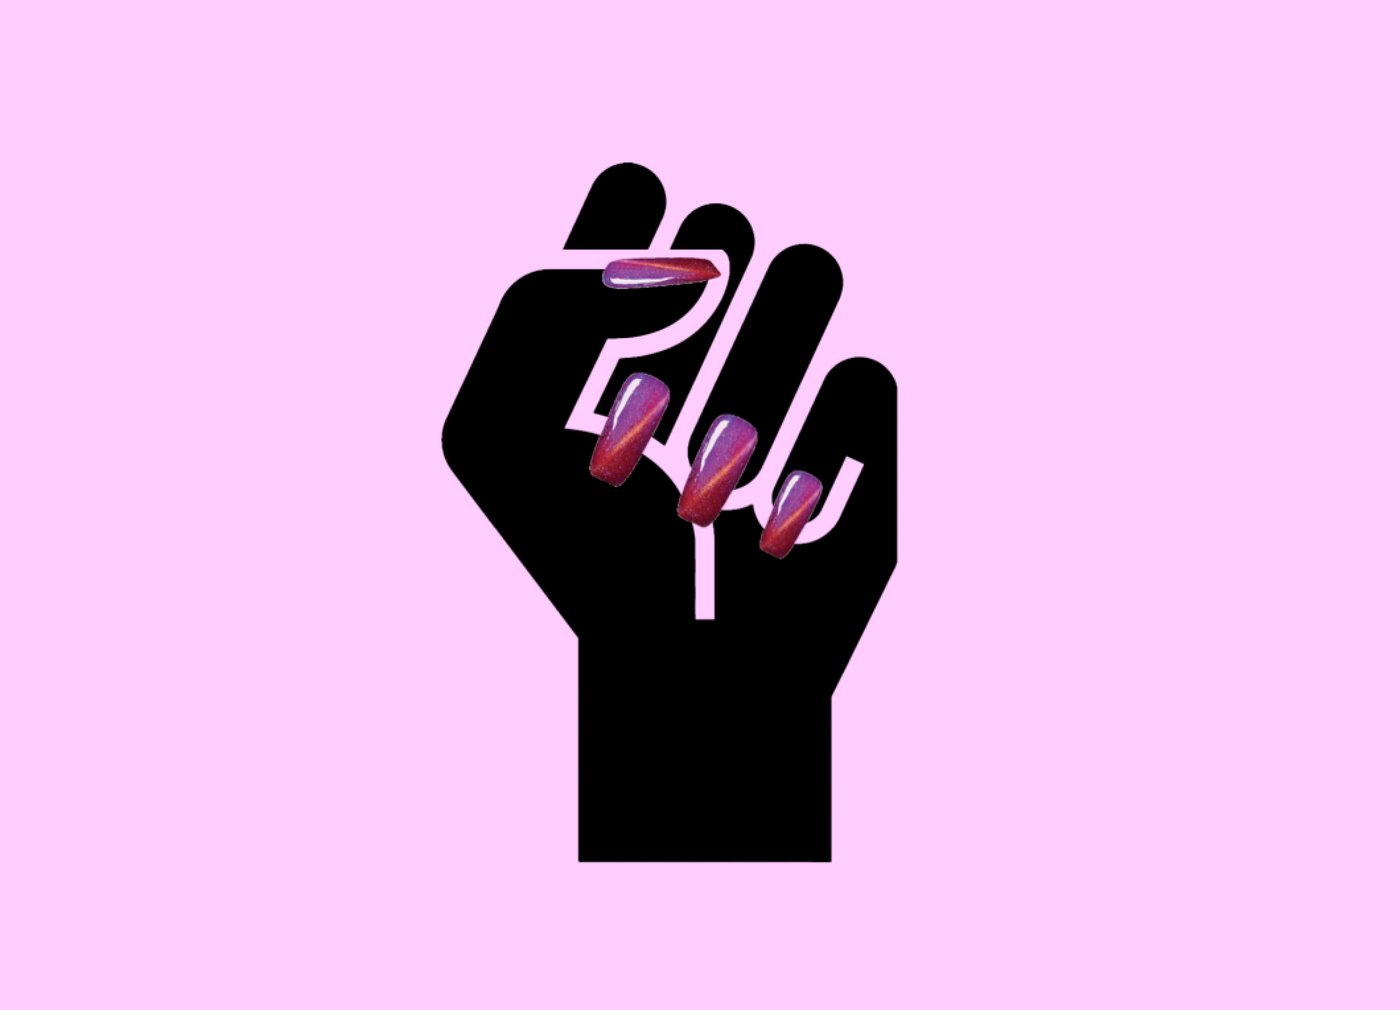 eine schwarze Faust in die Luft gestreckt mit rosa Fingernägeln auf rosa Hintergrund